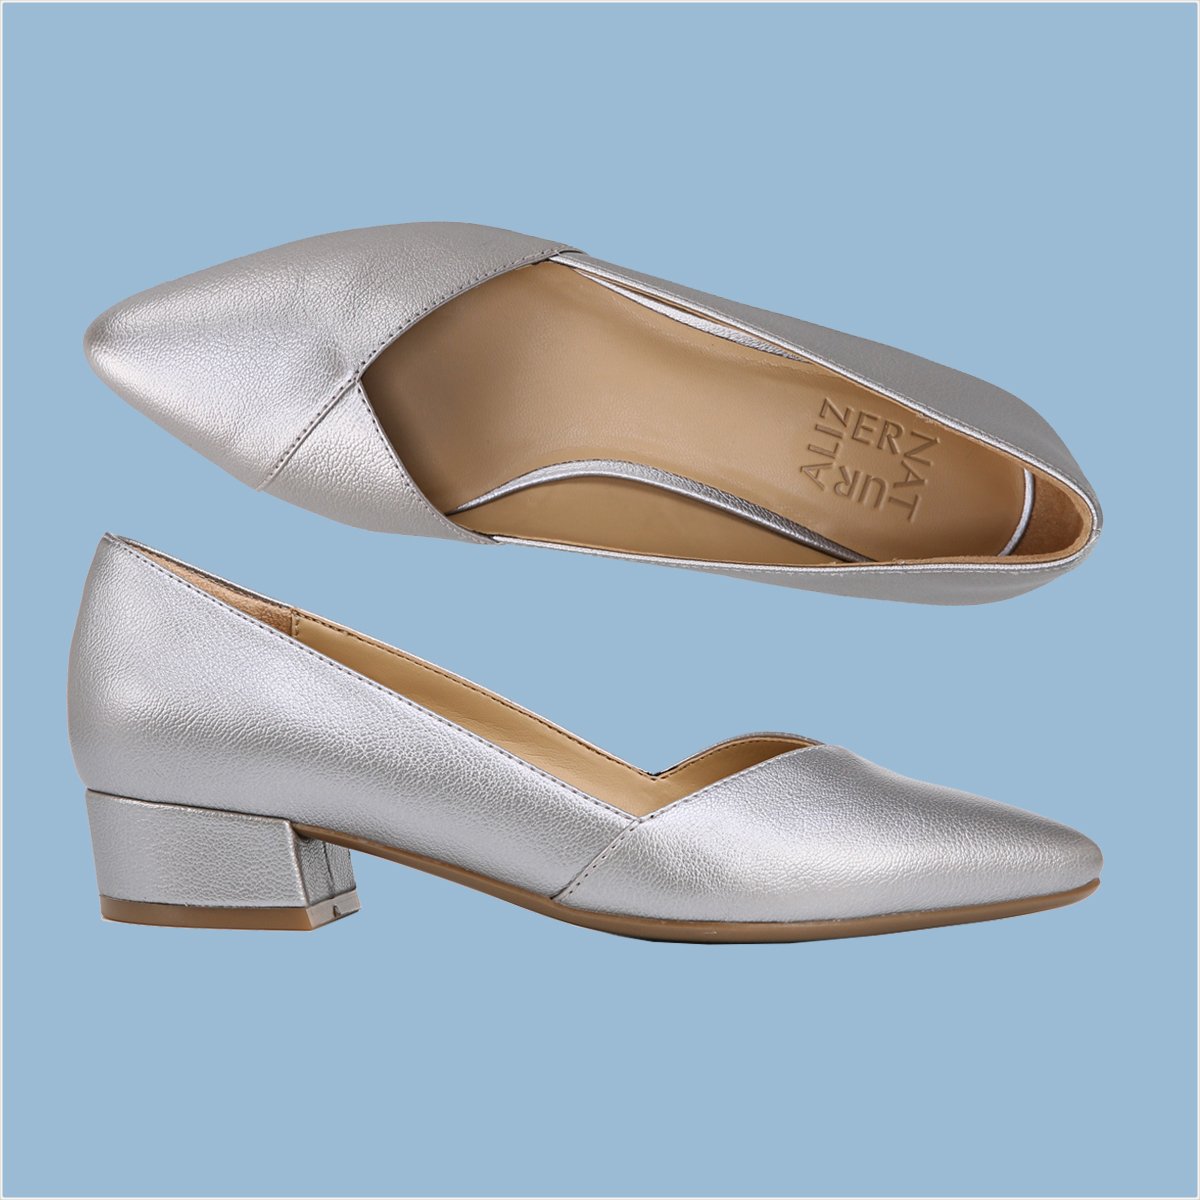 Twitter 上的 GT："Los zapatos Fallon son perfectos para lucir un bello look formal y sentir comodidad a cada paso que das. - - - - - #dama #calzado #zapatillas #accesorios #mujer #vestidos #mujeres #belleza #